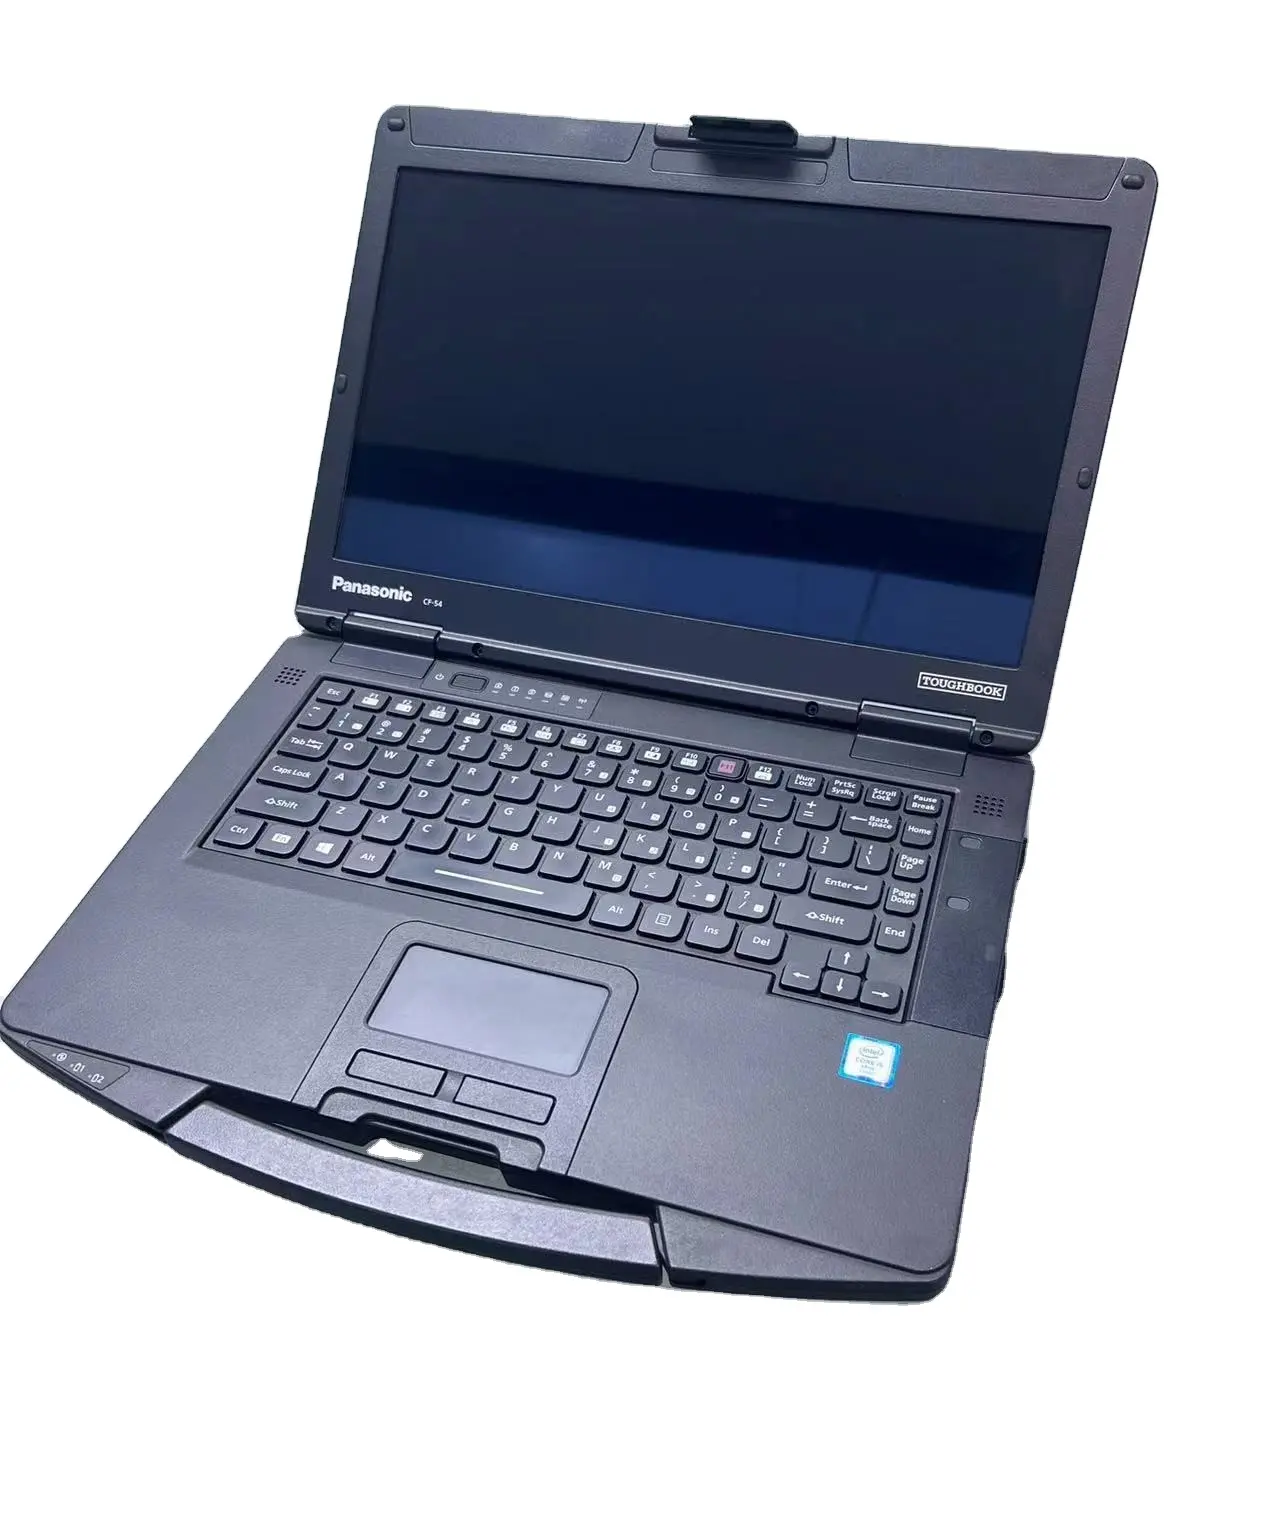 Obral laptop 14 inci komputer tangan kedua, laptop Cf-54 kuat bekas